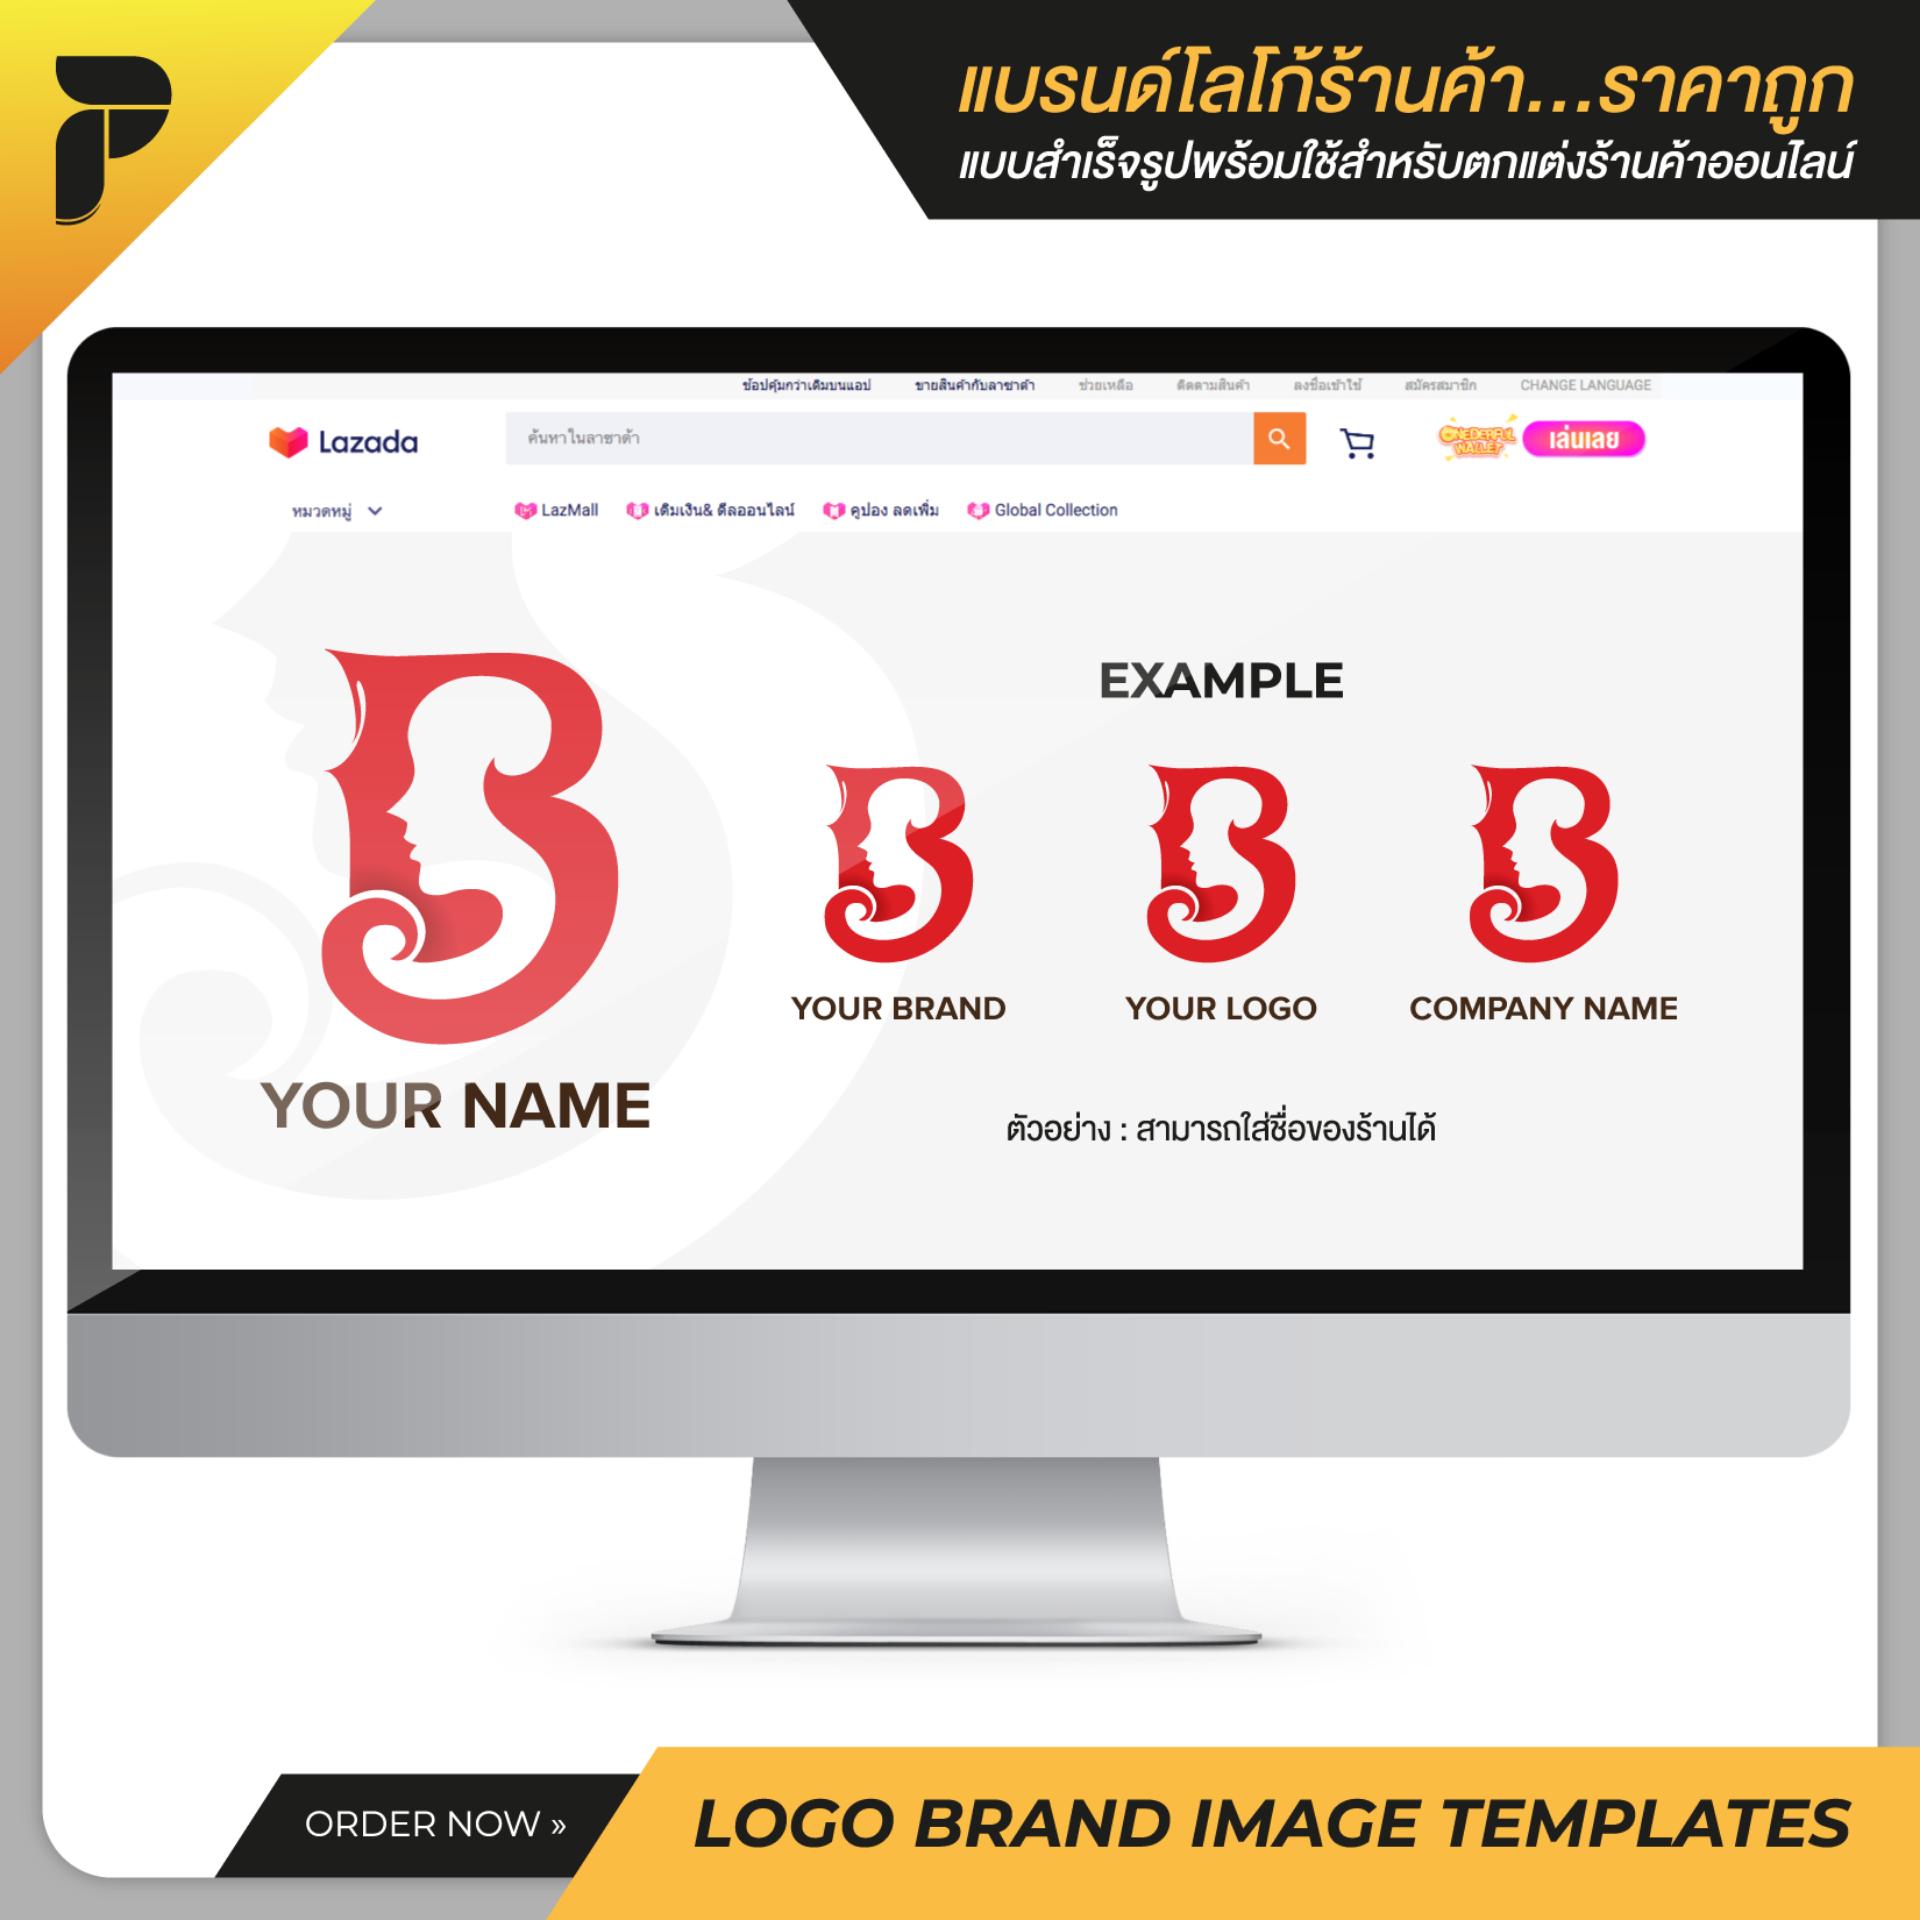 รูปโปรไฟล์โลโก้แบรนด์ร้านค้าสำเร็จรูปพร้อมใช้สำหรับตกแต่งร้านค้าออนไลน์ ไลน์ เฟสบุ๊ค เว็บไซต์ Profile Logo Brand Image Template Ready-to-Work by PathGraphic Studio